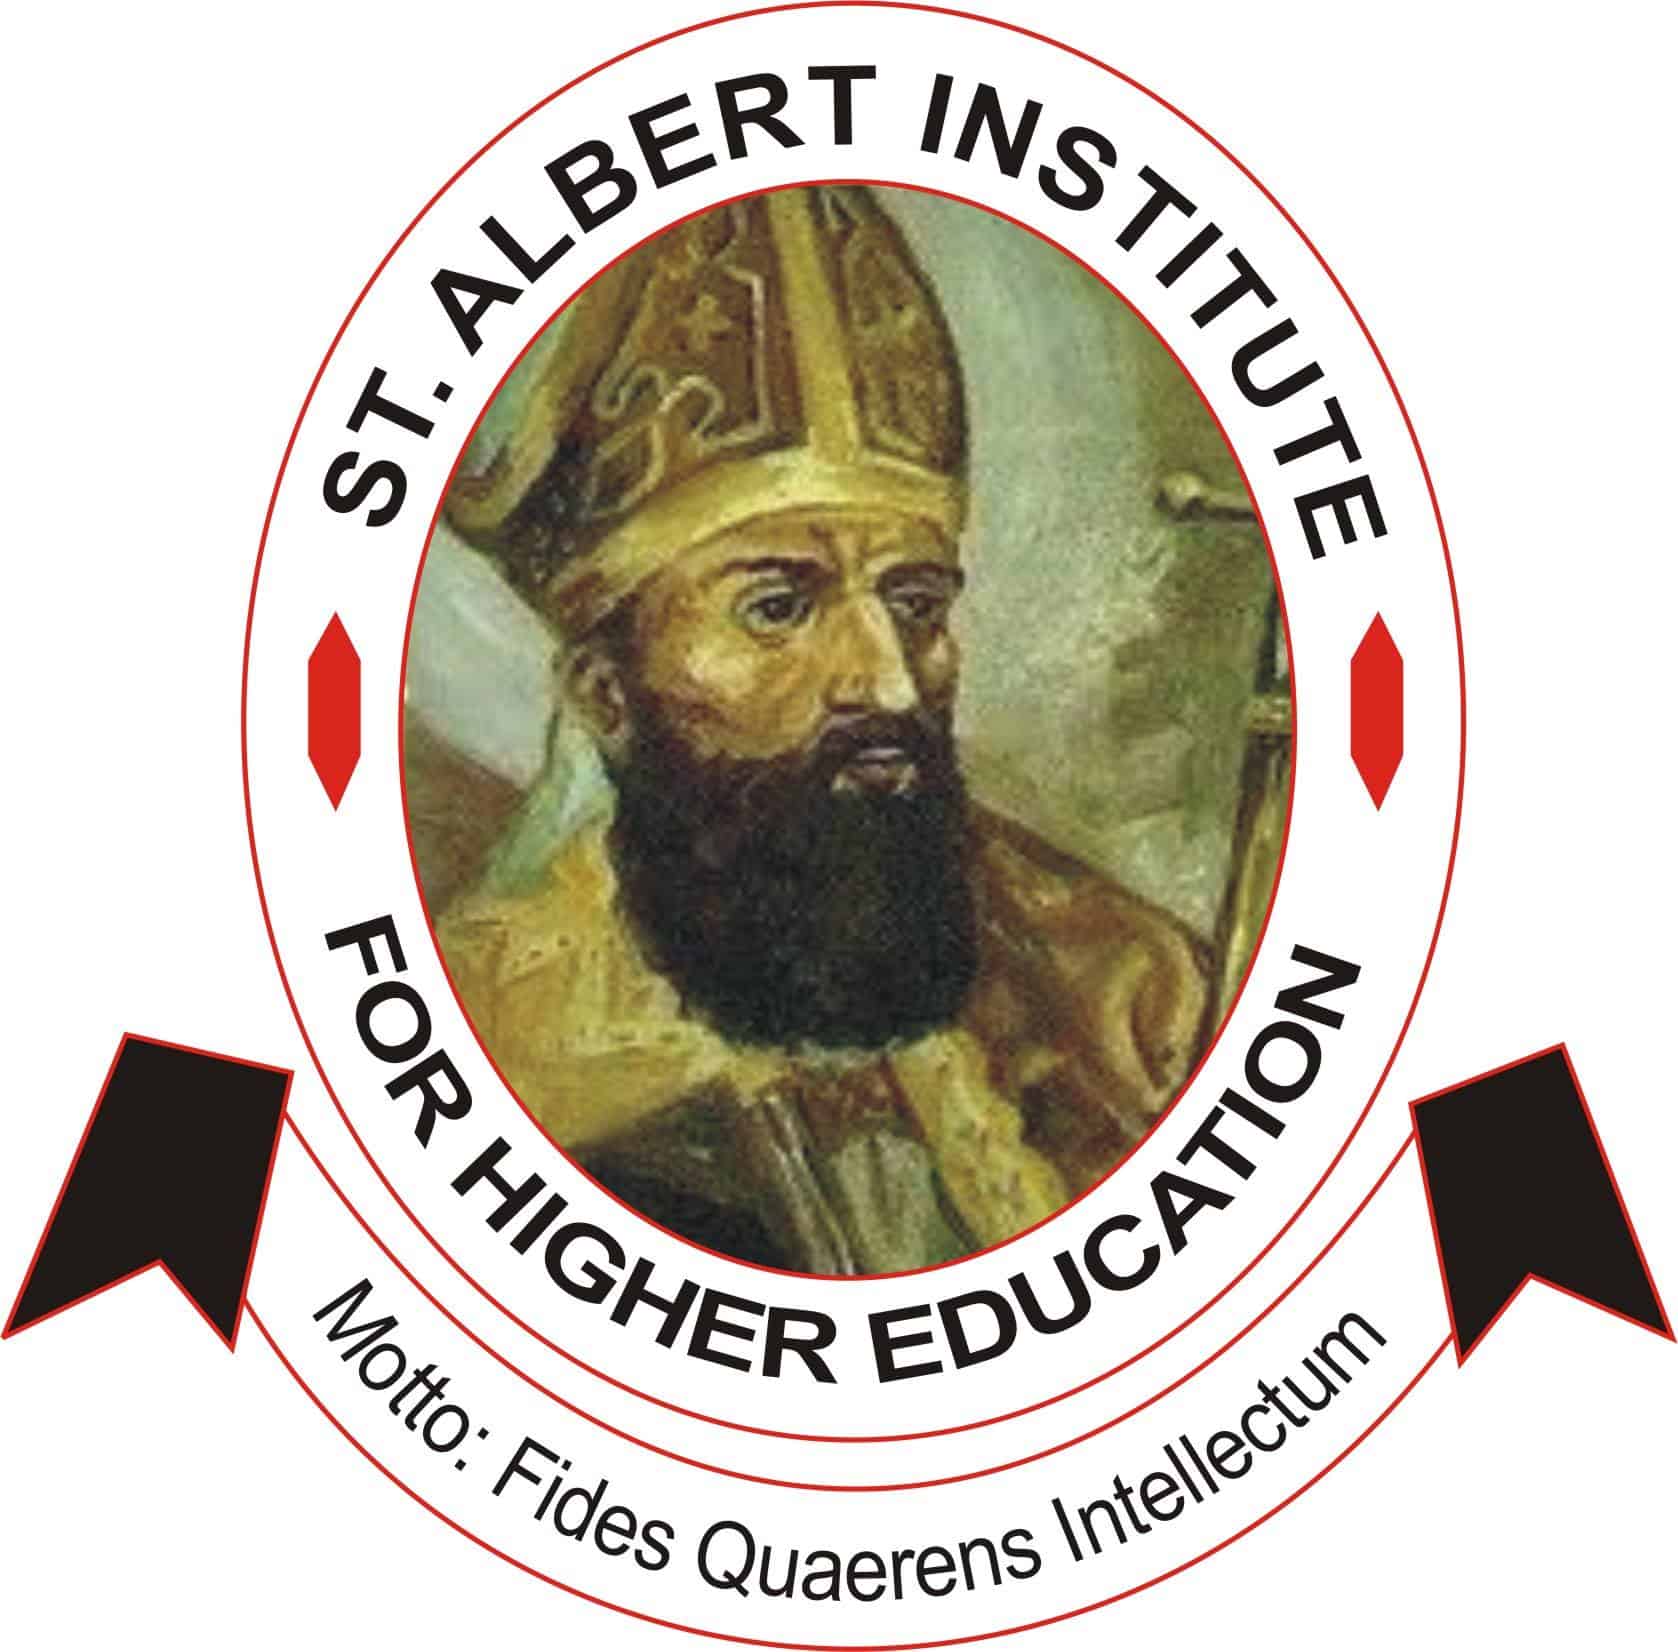 St. Albert Institute (affiliated to UNIJOS) Admission List